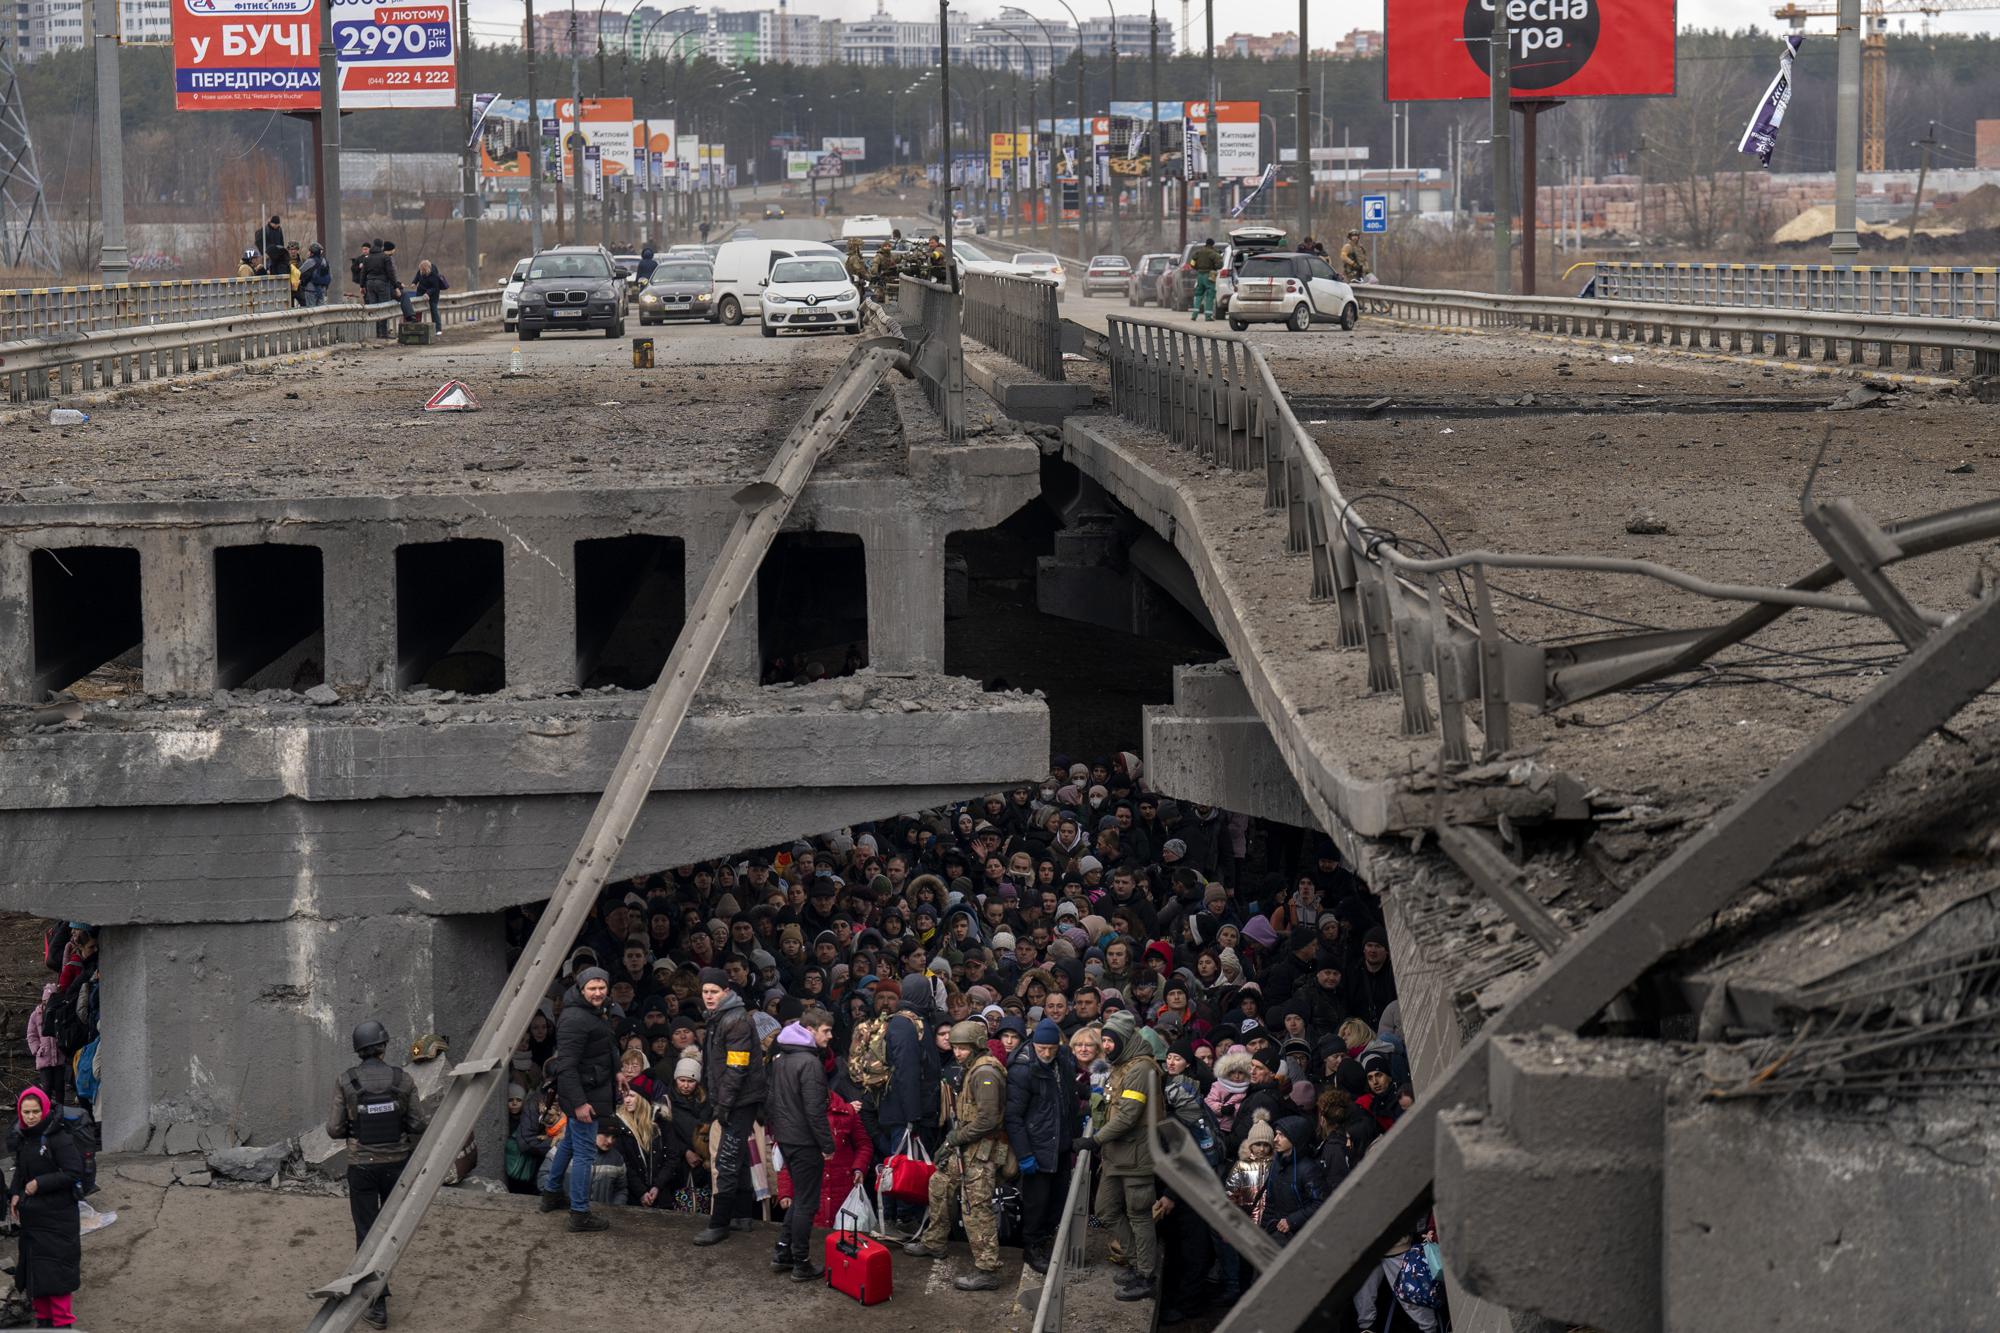 Ảnh thế giới 7 ngày qua: Bom đạn bao trùm, hàng trăm nghìn người di tản khỏi Ukraine - Ảnh 5.